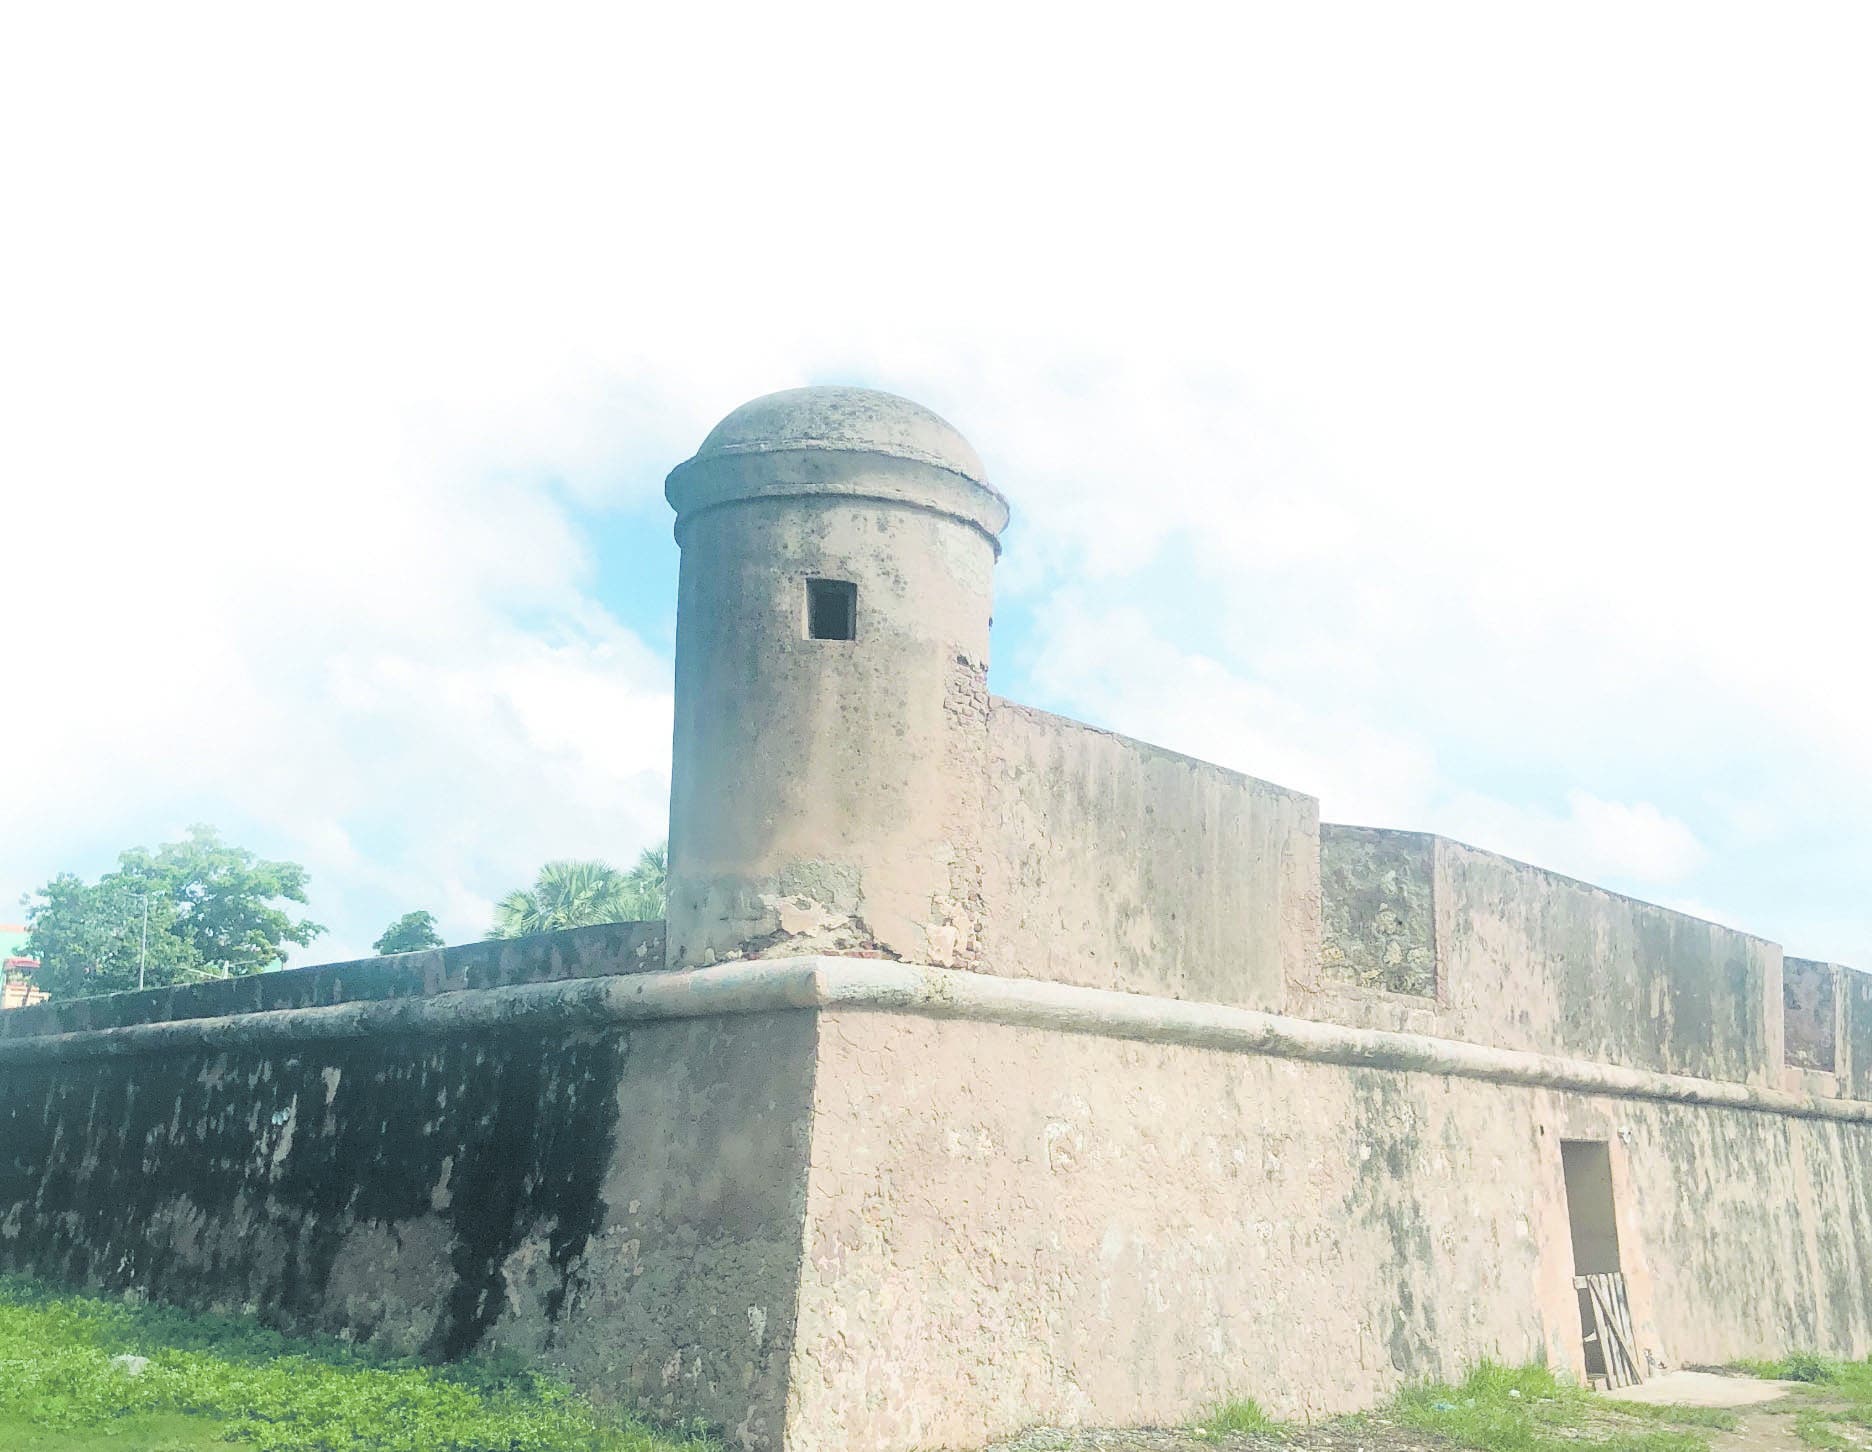 El fuerte San Gil fue construido en la línea de defensa frente al mar